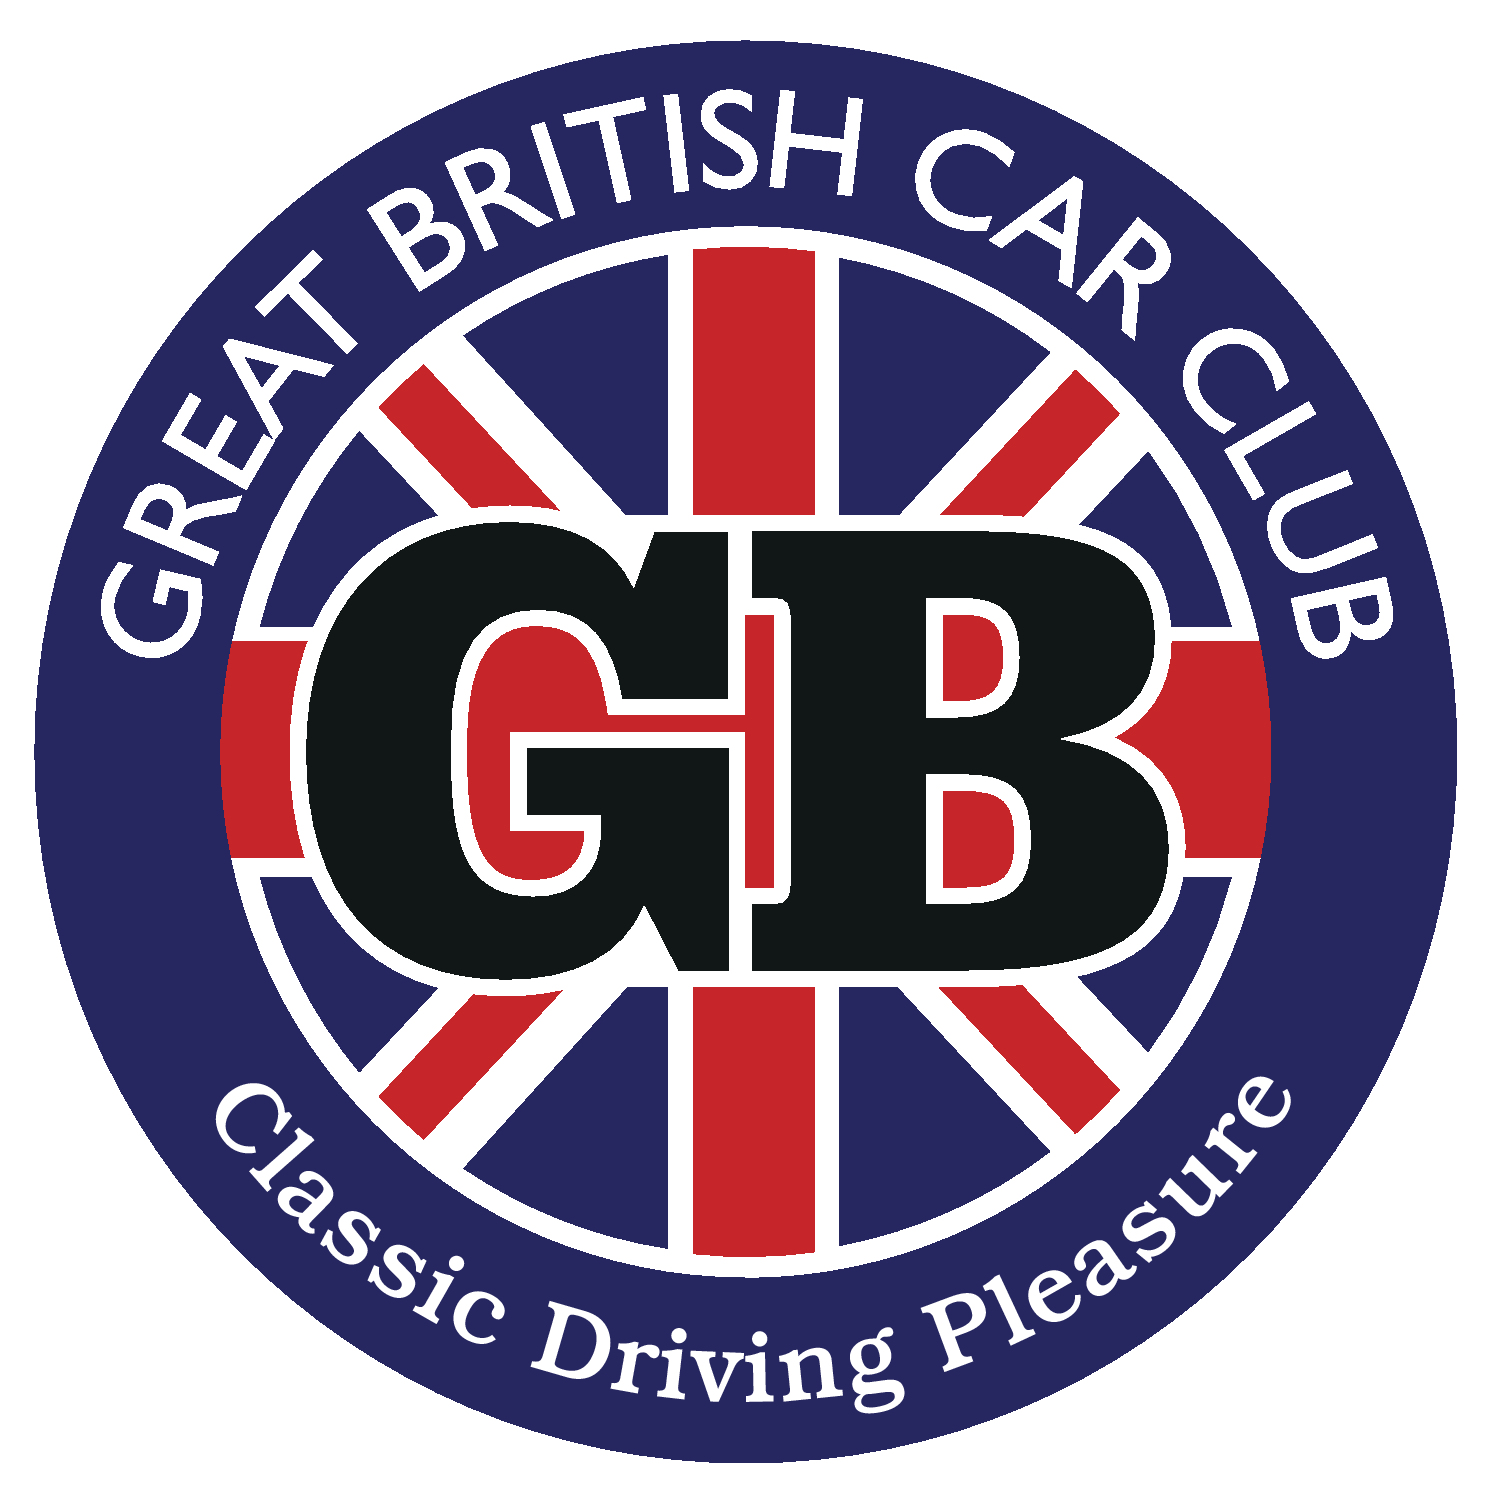 Great British Car Club Ltd